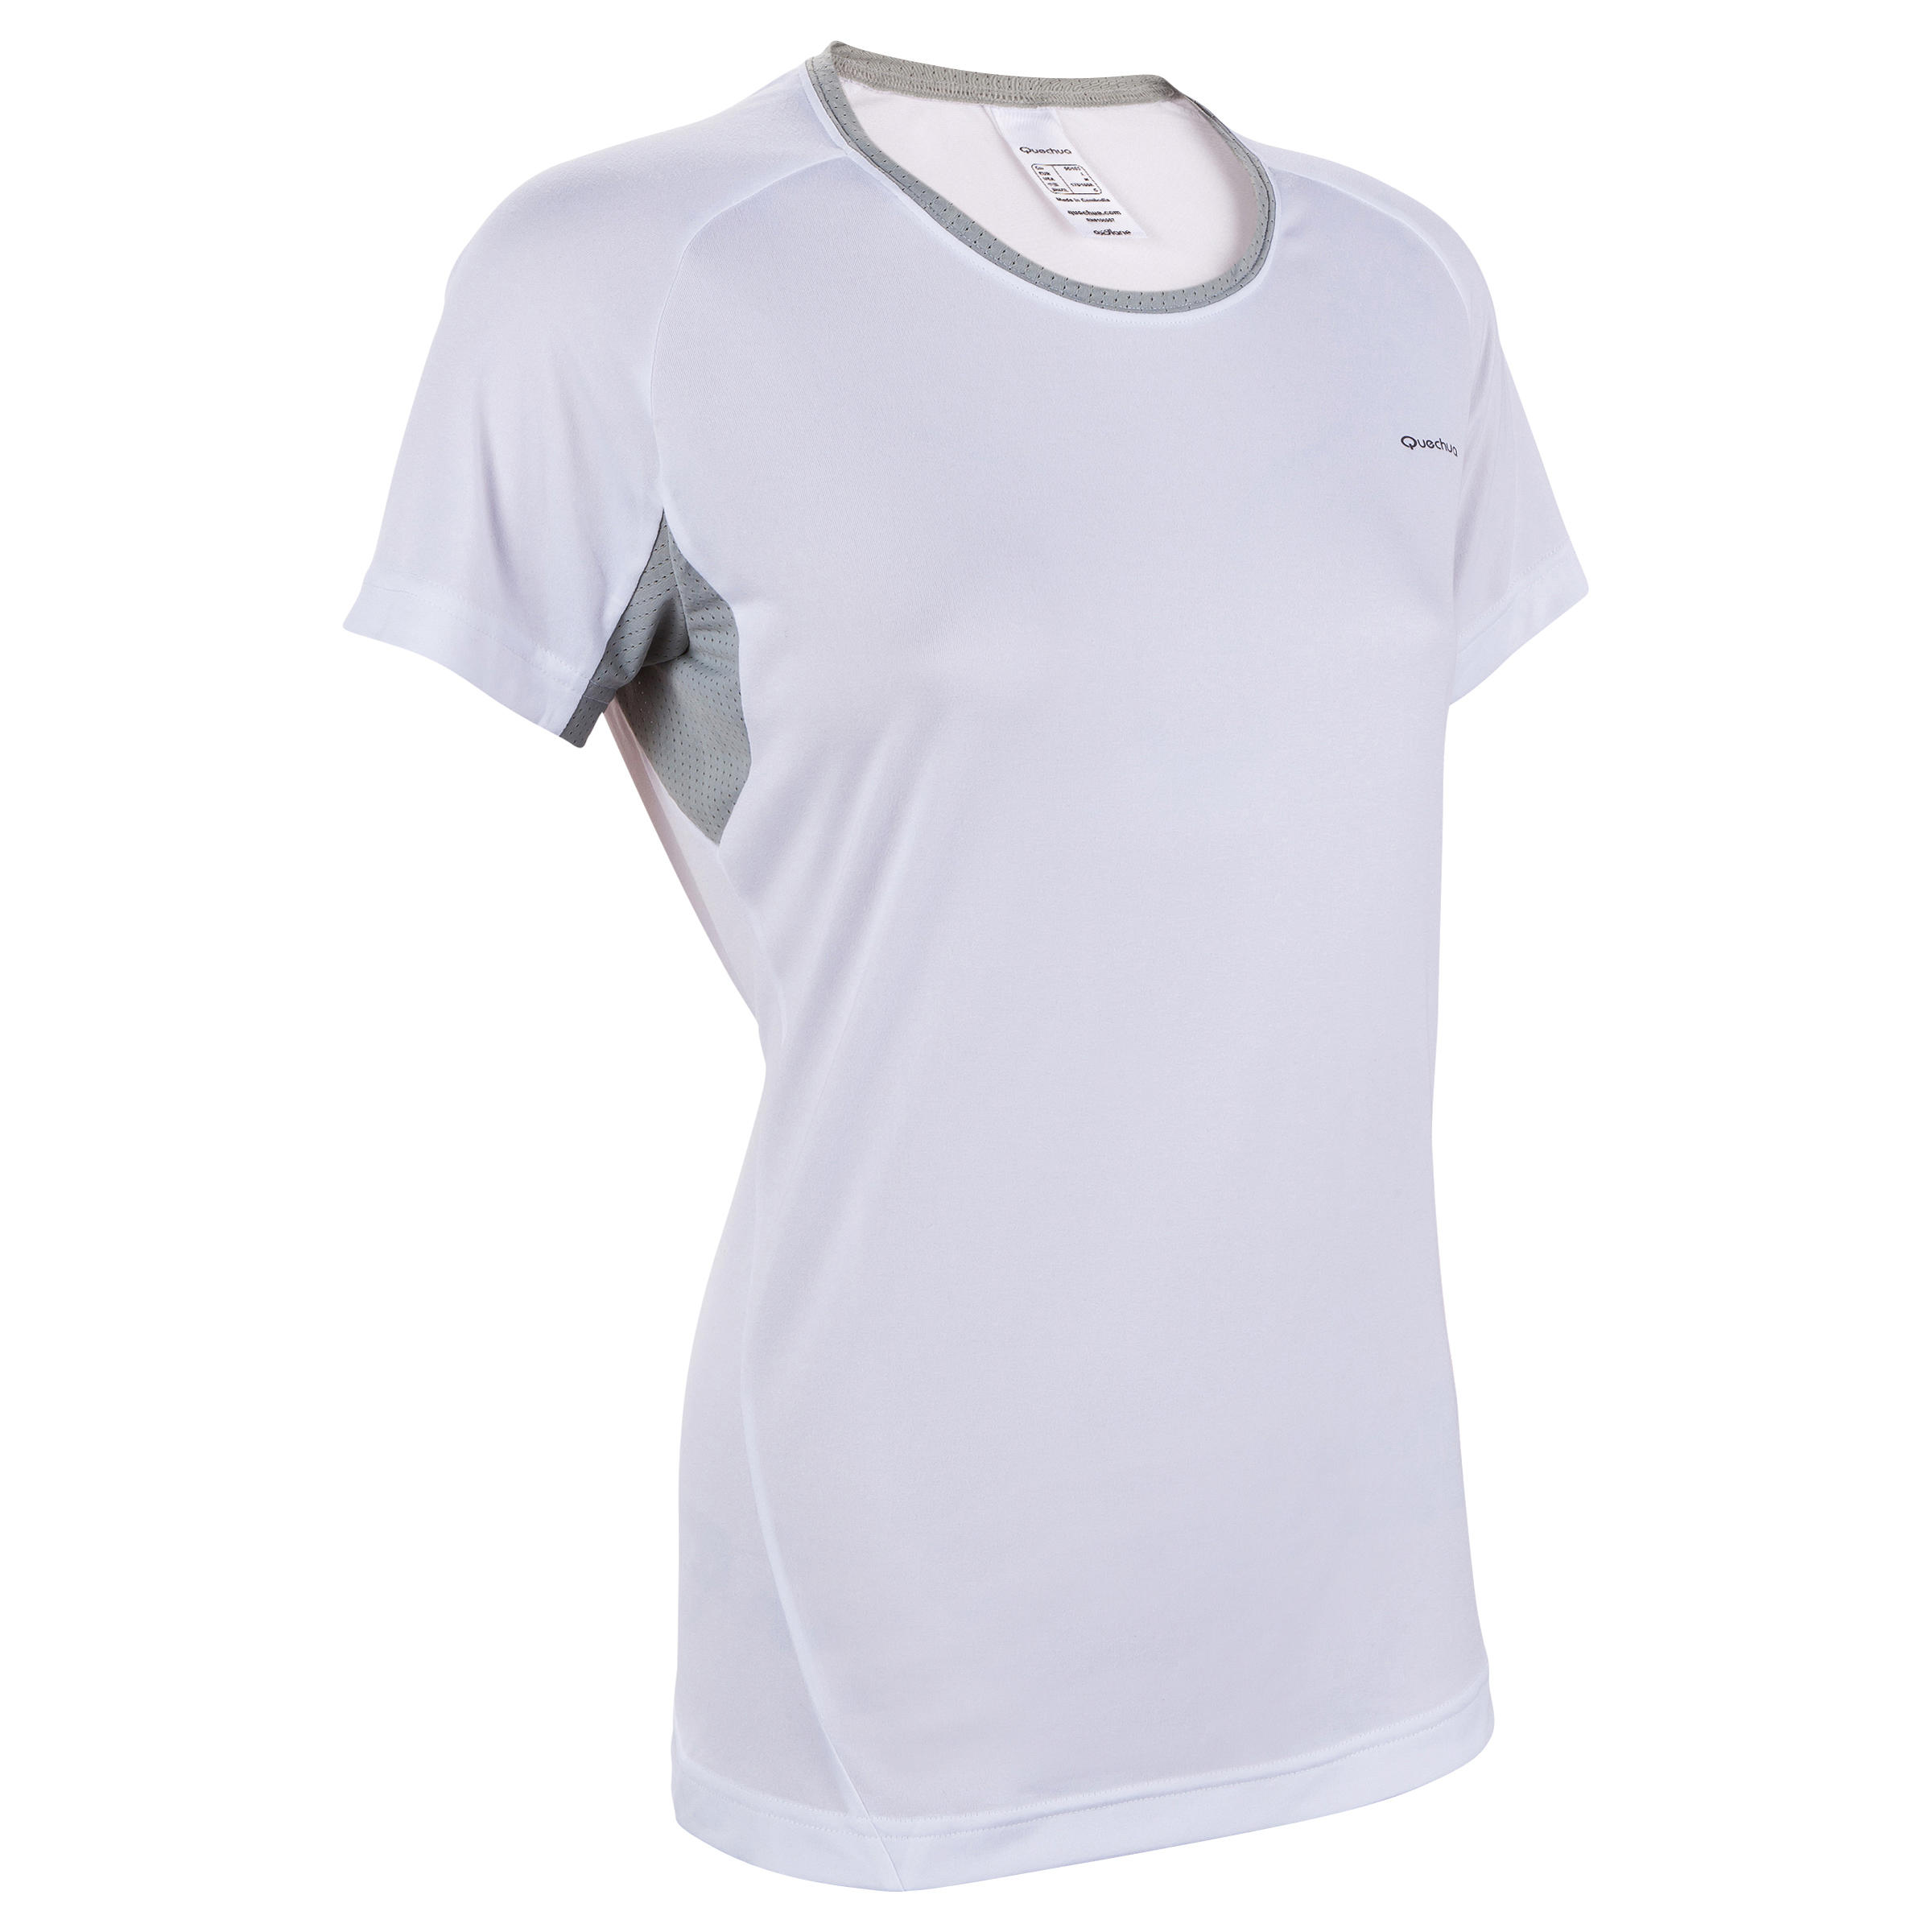 QUECHUA Techfresh 50 Women's Short Sleeve Hiking T-shirt - White